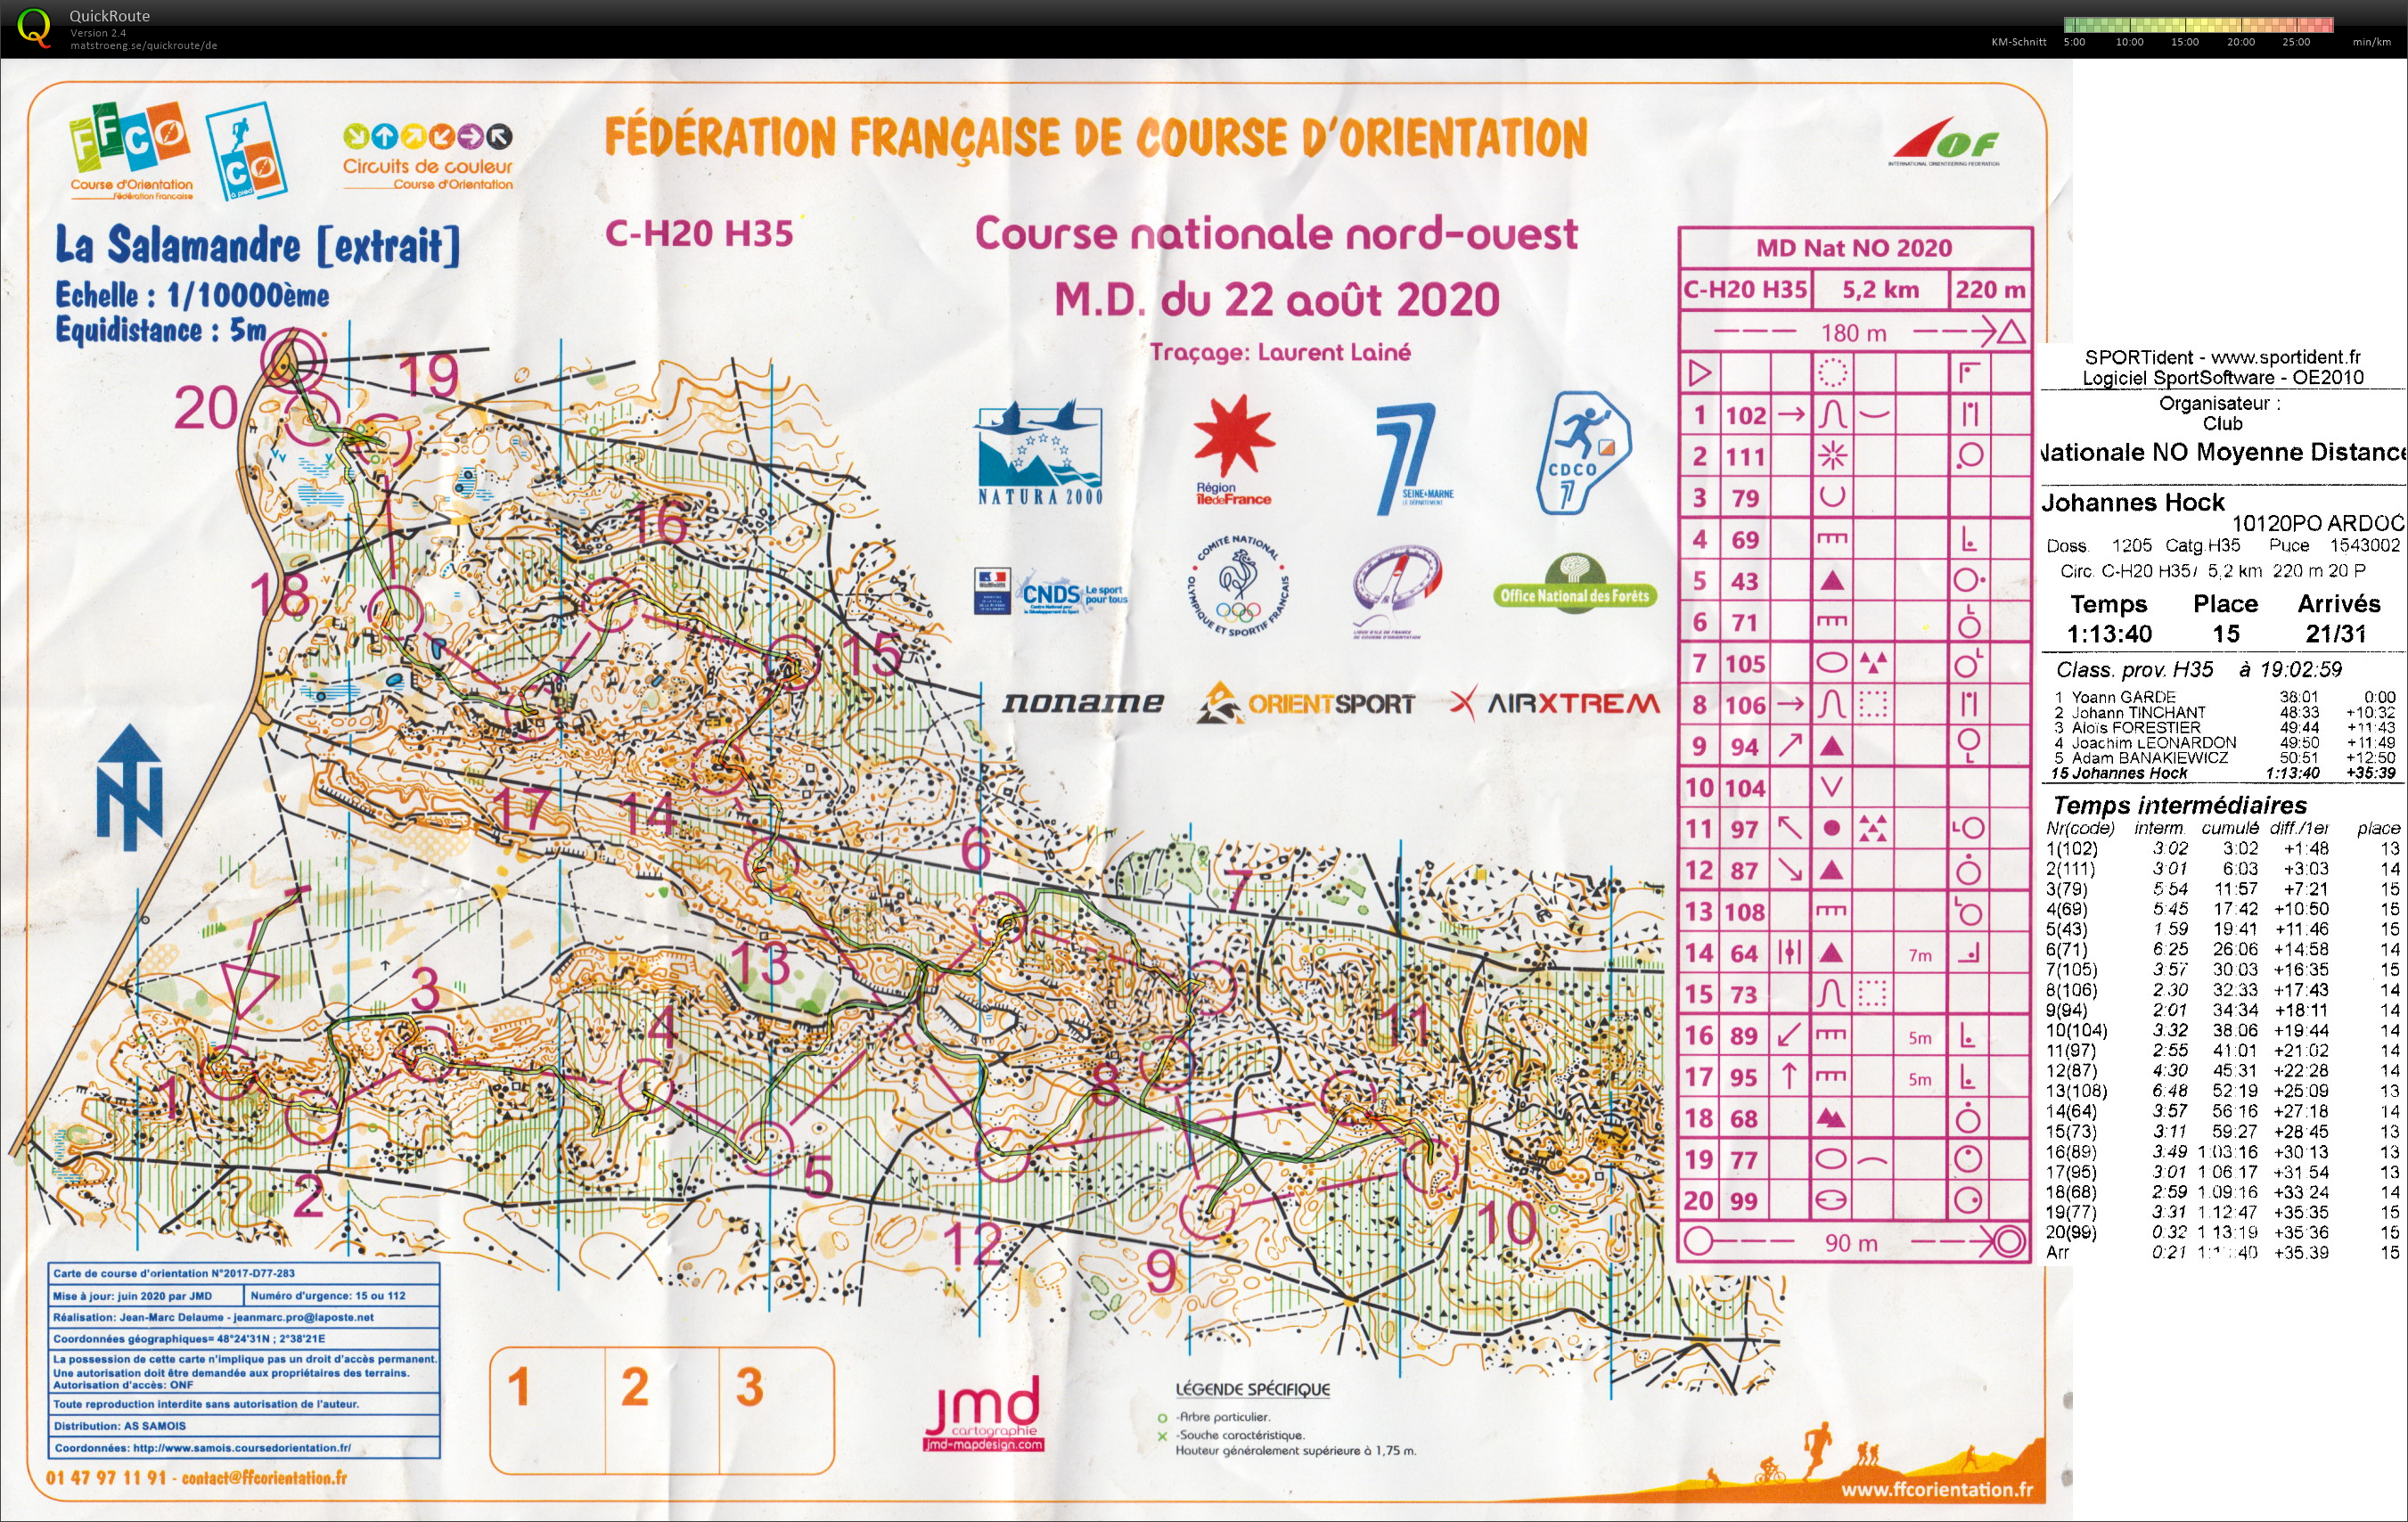 Course nationale M.D. Fontainebleau (22/08/2020)